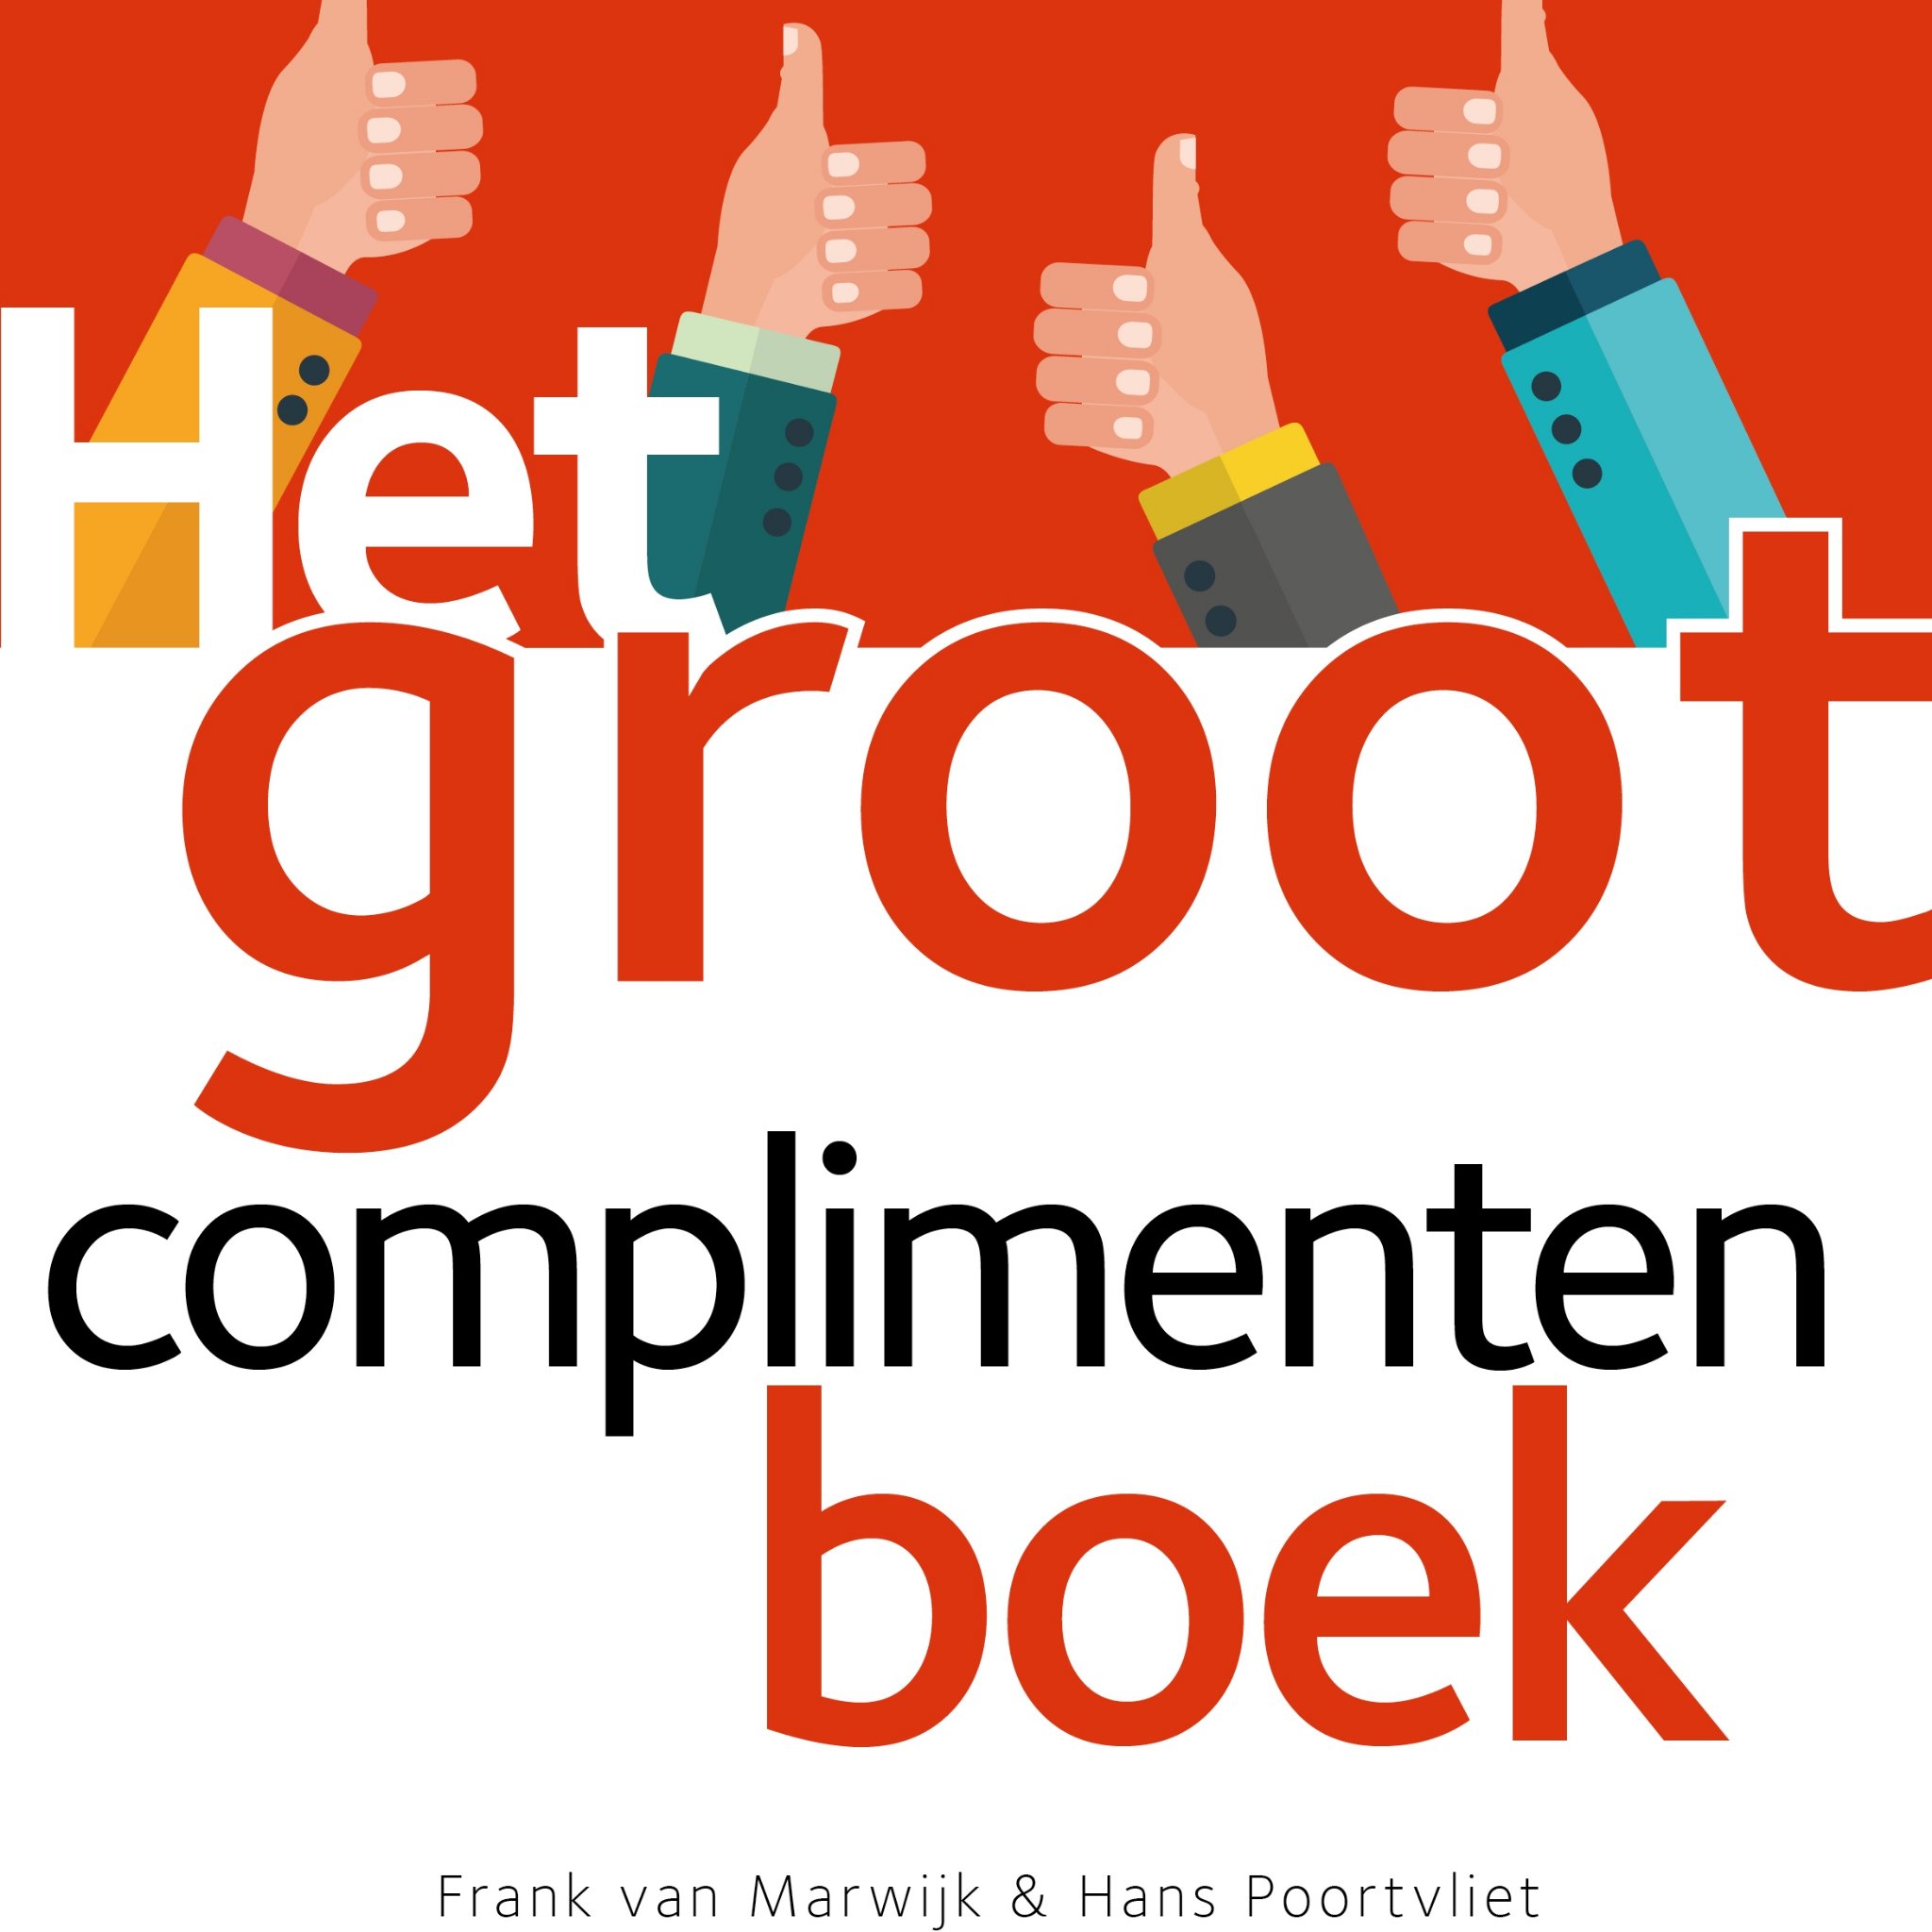 Frank van Marwijk (@lichaamstaal) & Hans Poortvliet (@waardeermeer)
Auteurs van Het Groot Complimentenboek